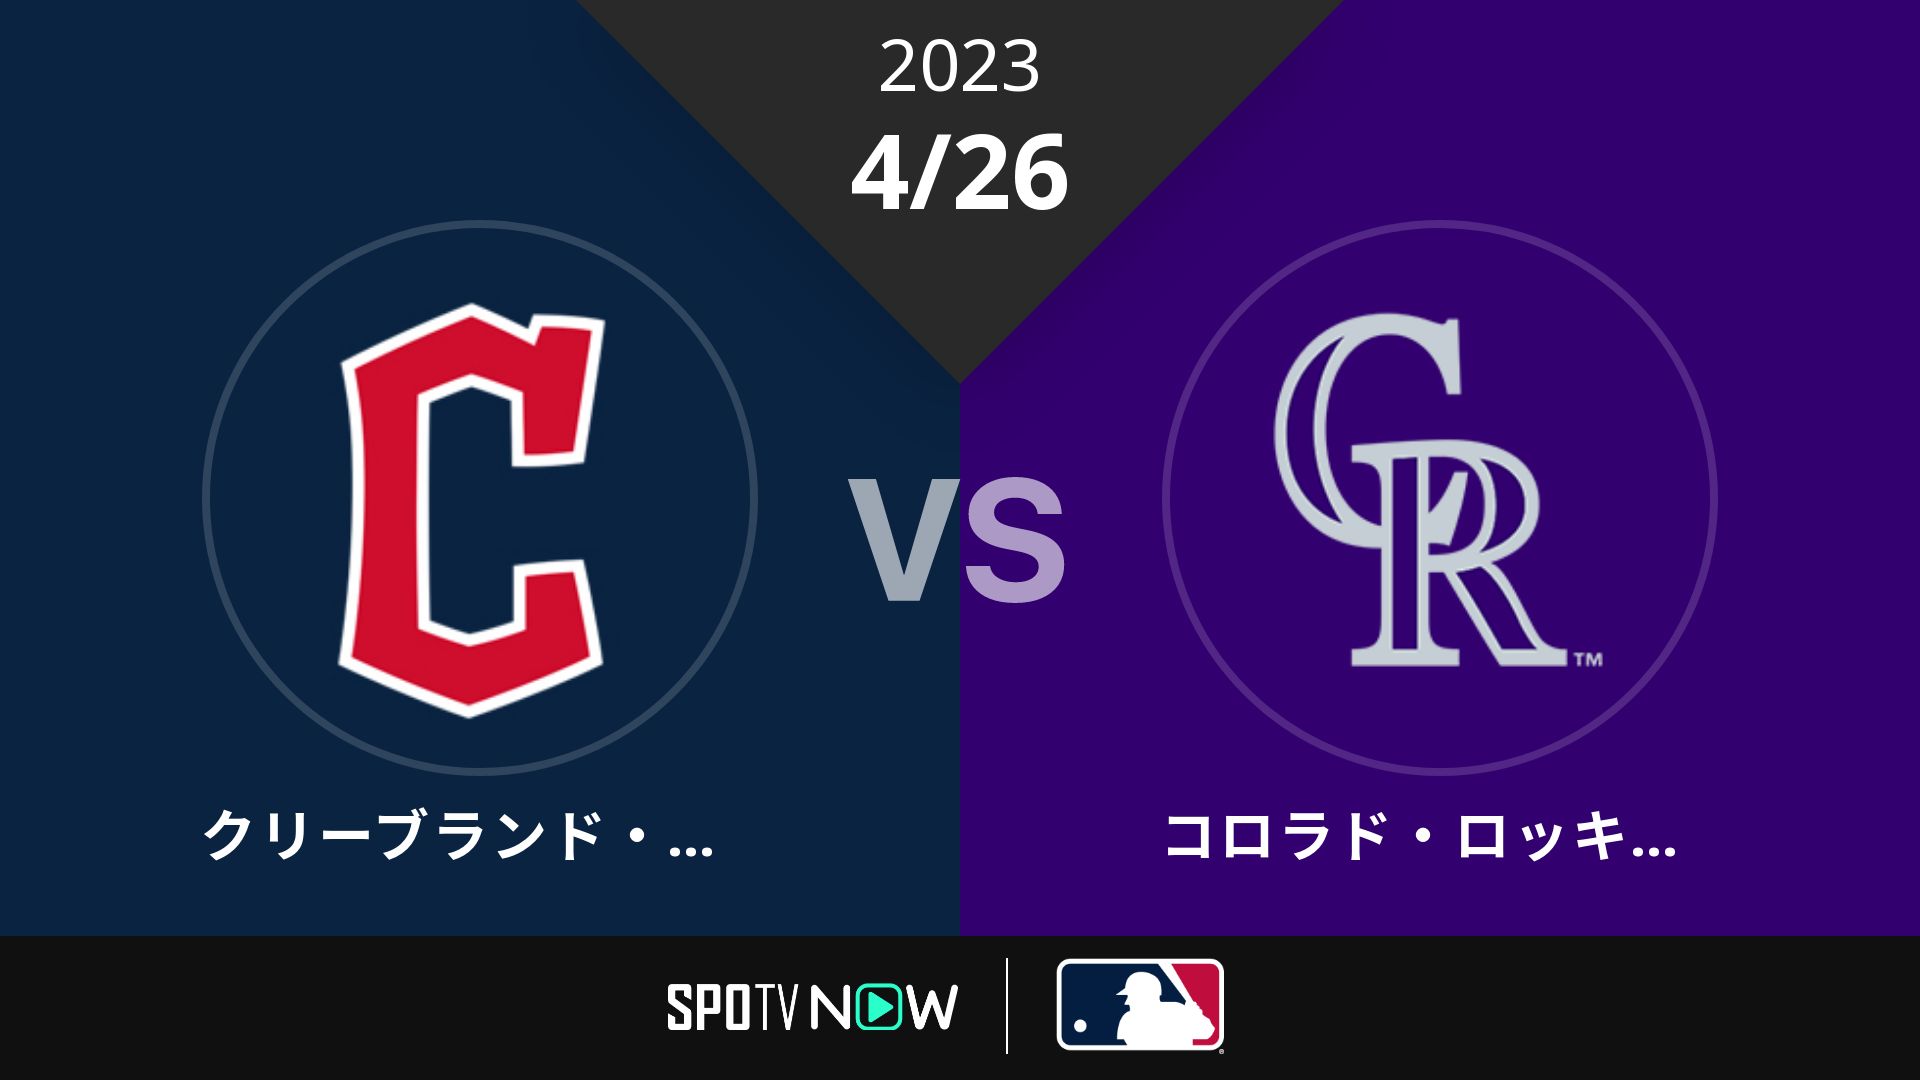 2023/4/26 ガーディアンズ vs ロッキーズ [MLB]